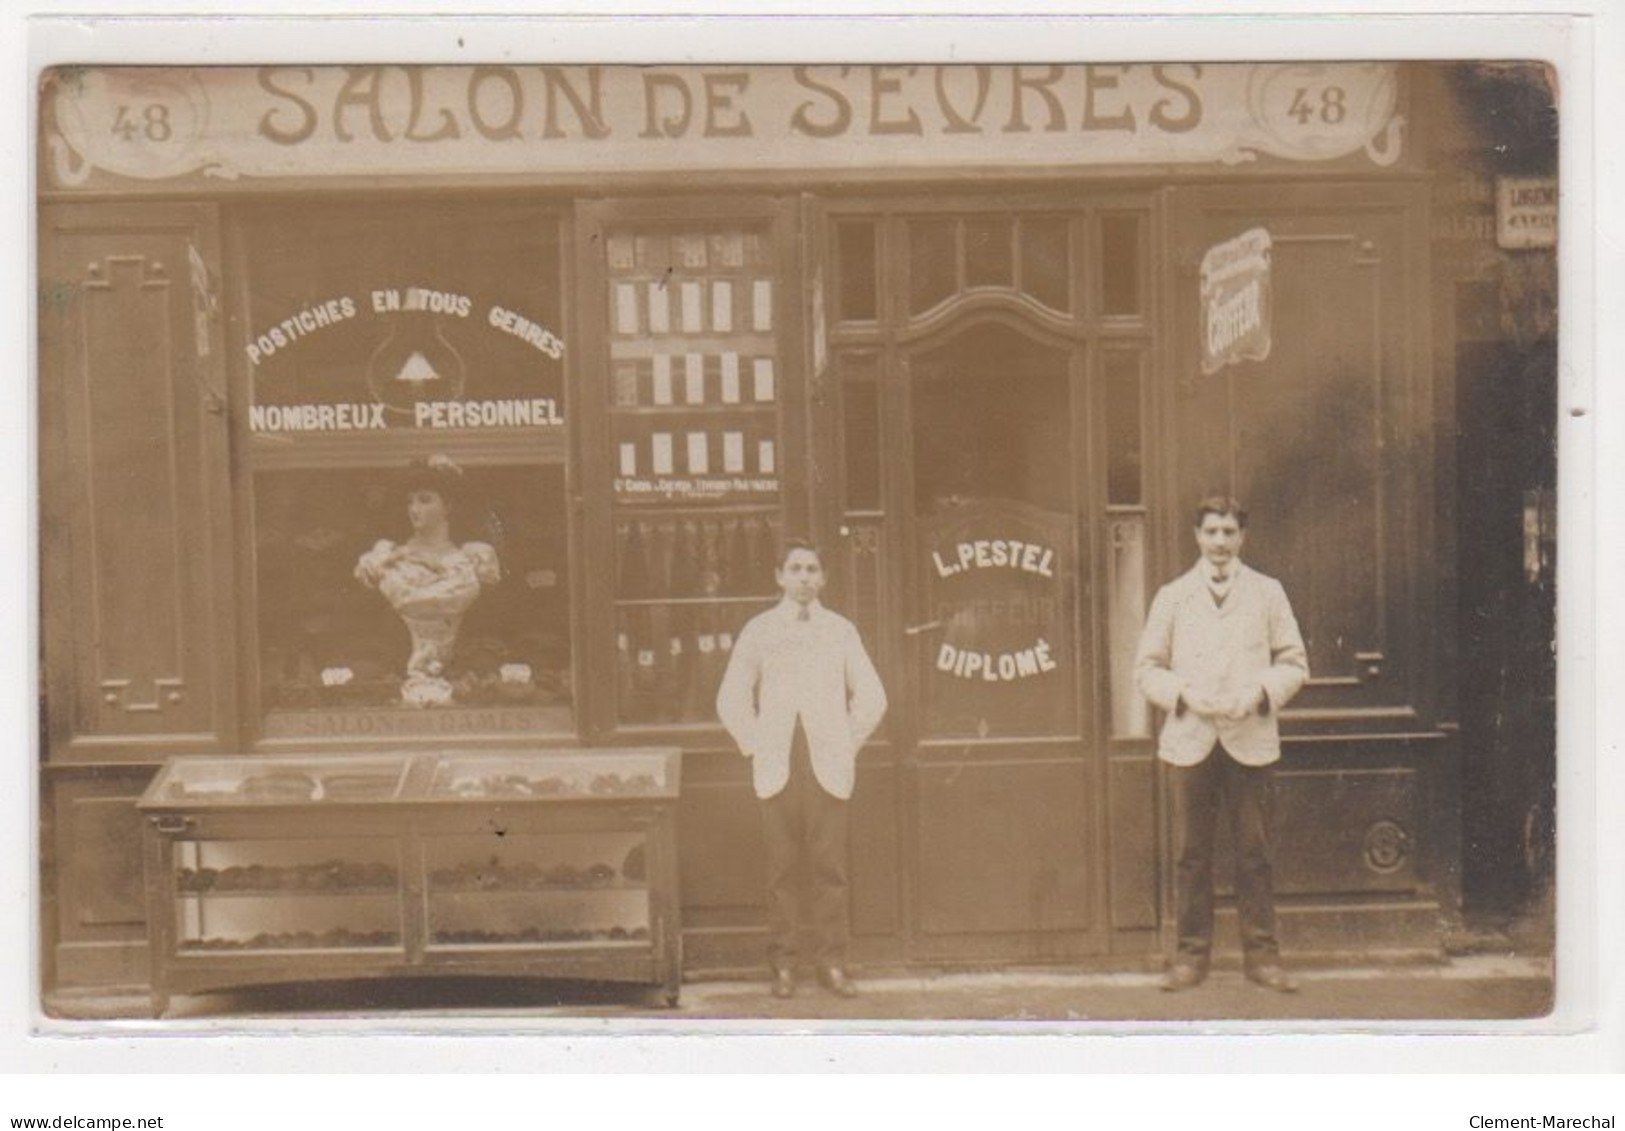 PARIS : Carte Photo Du Salon De Coiffure De Sevres (PESTEL - Coiffeur) Au 48 Rue De Sevres - Bon état - Arrondissement: 07